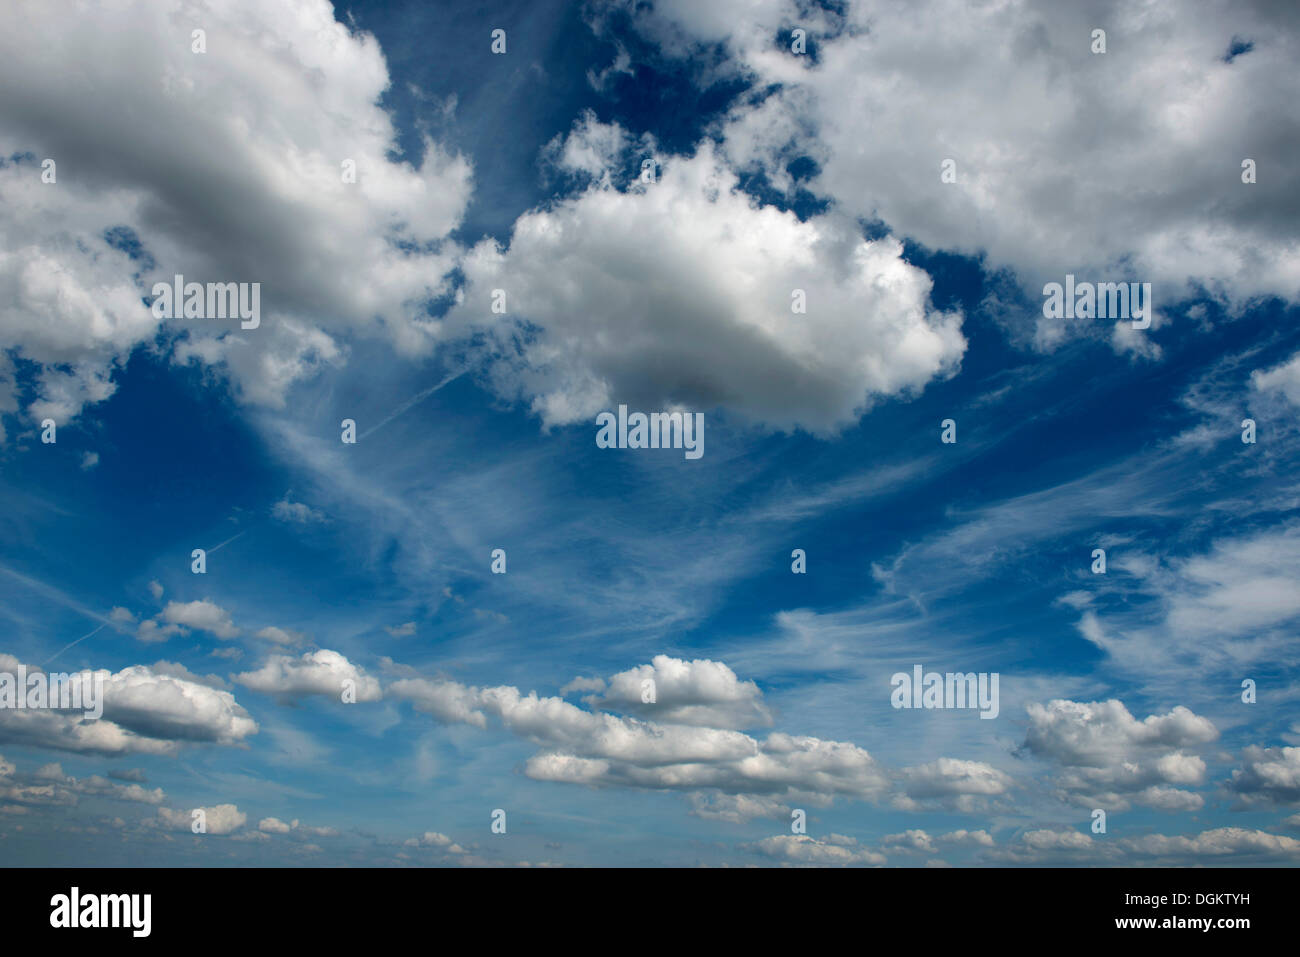 Clouds and cumulus clouds in a blue sky Stock Photo